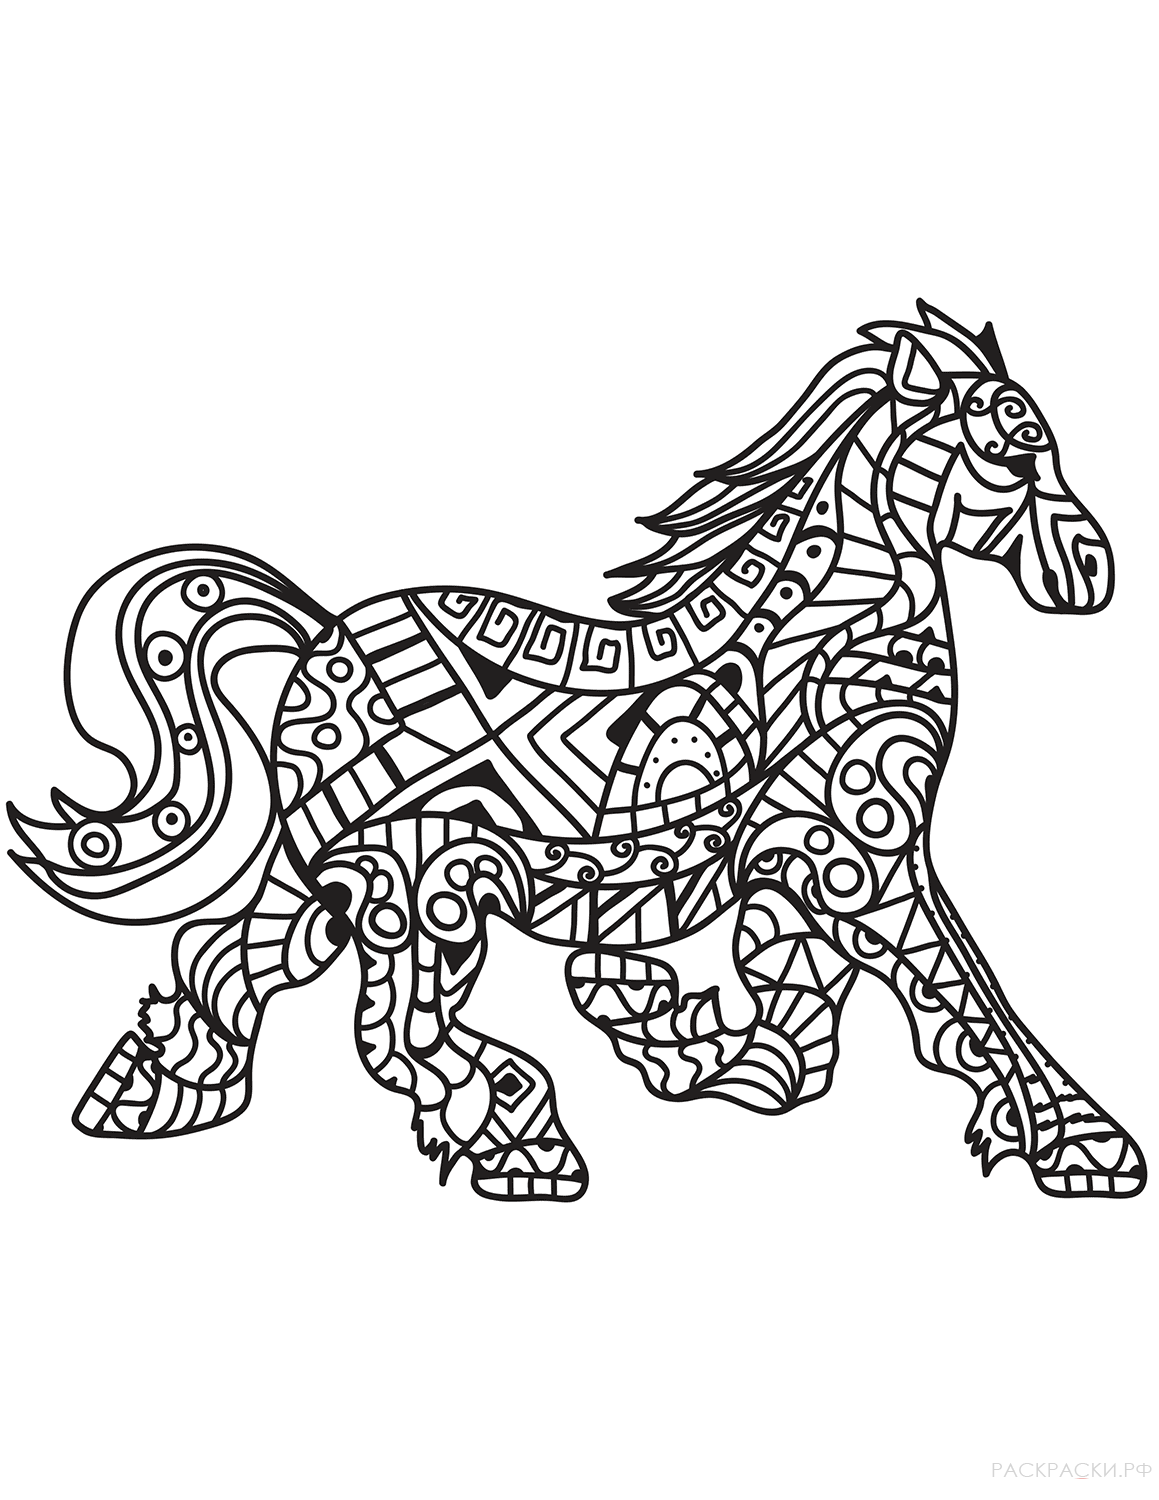 Раскраска Бегущая лошадь в технике дзентангл 2